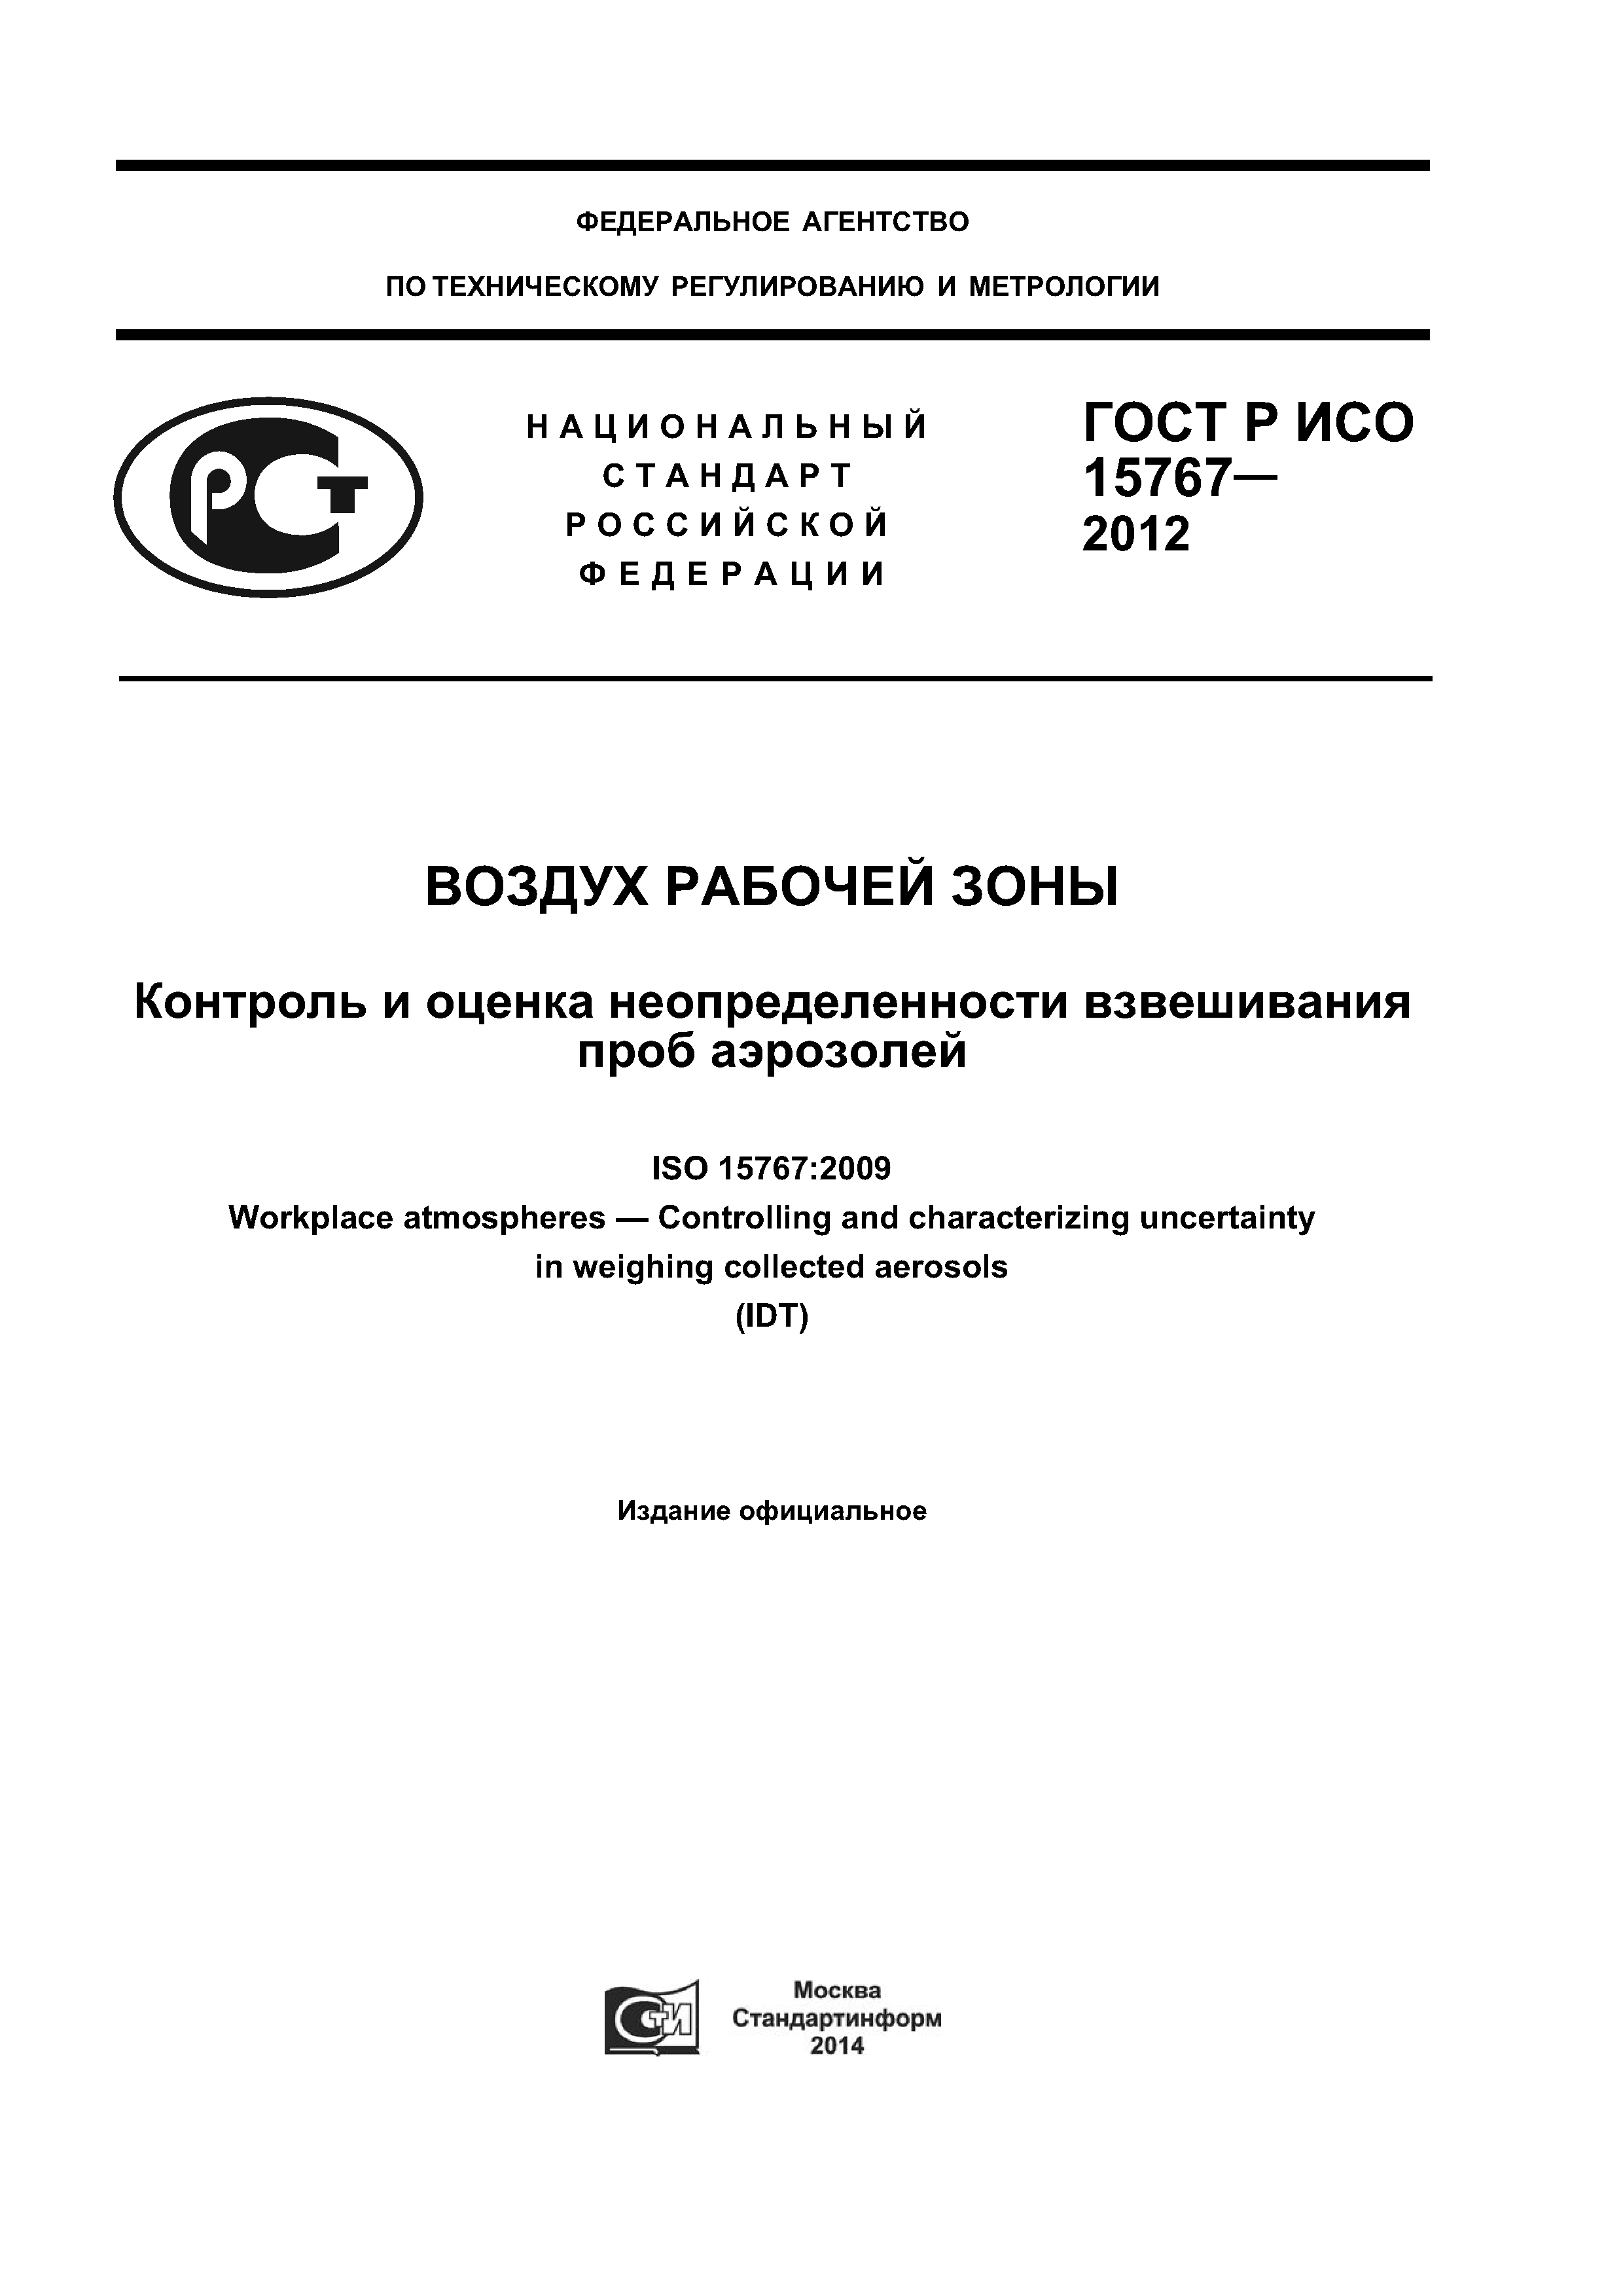 ГОСТ Р ИСО 15767-2012